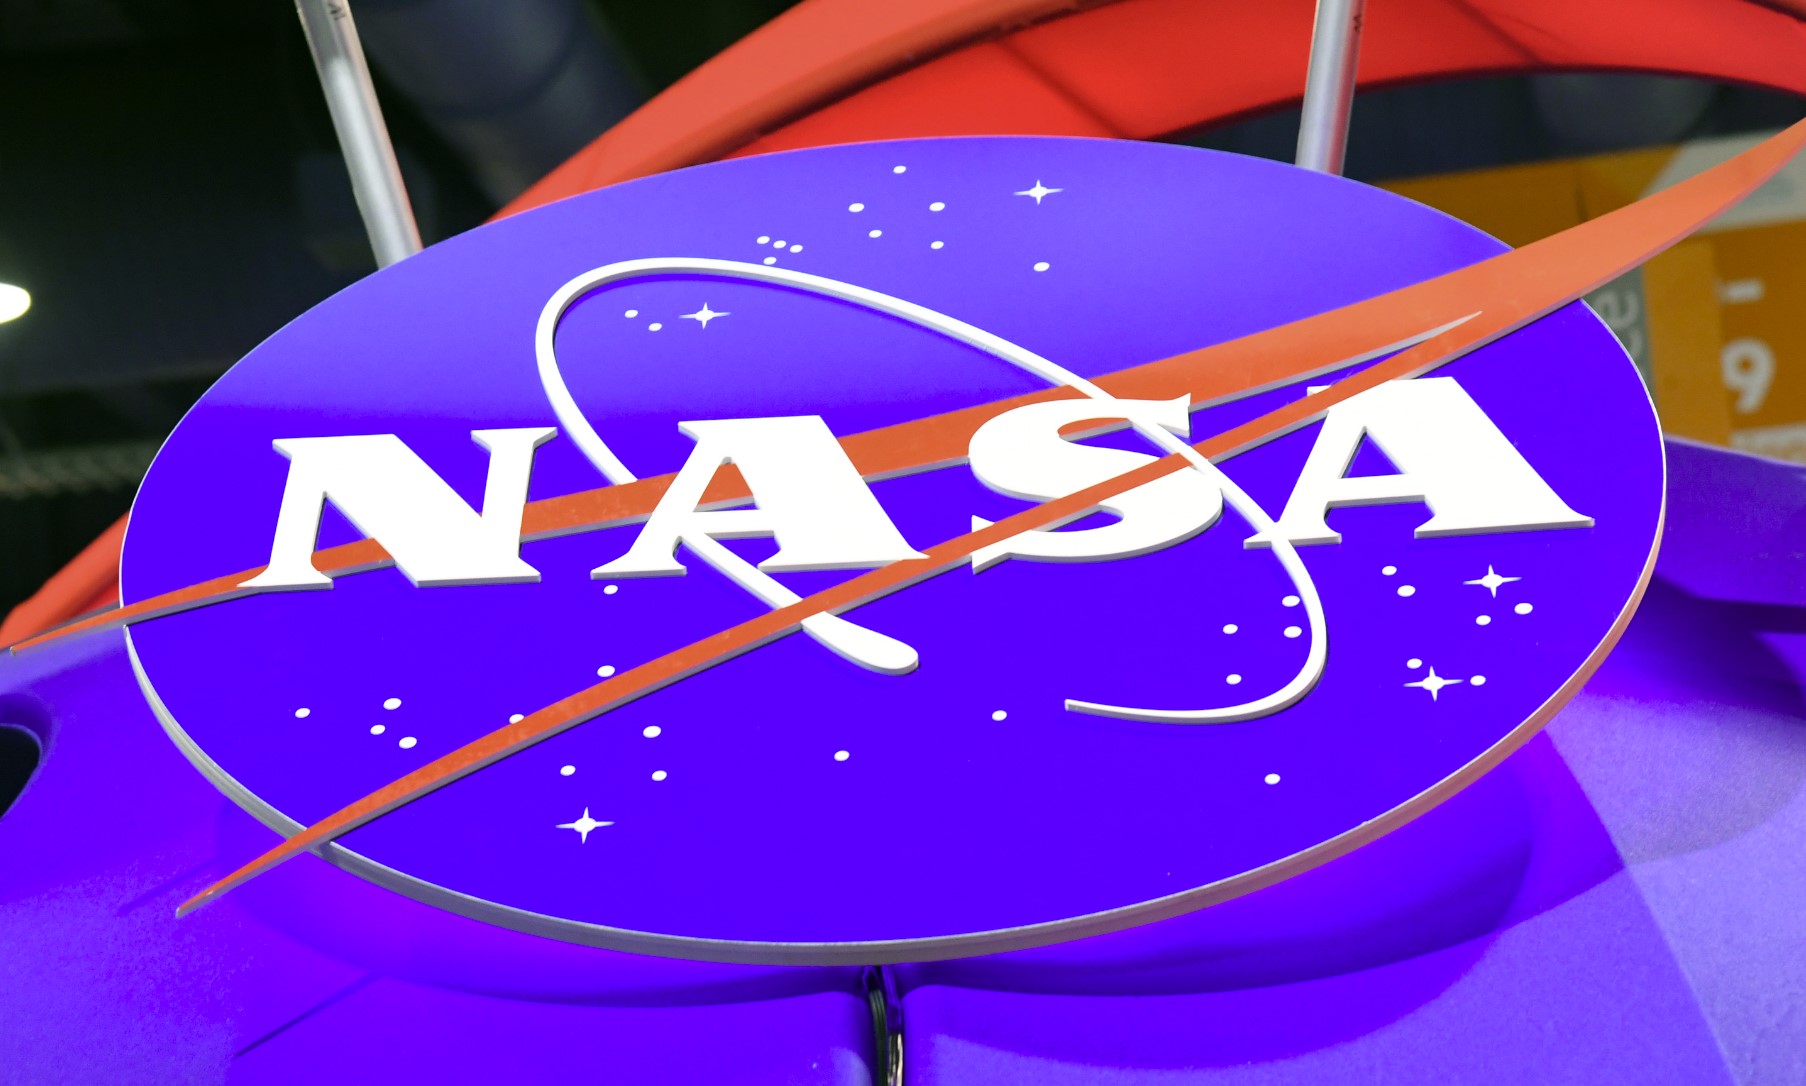 La NASA estudiará el fenómeno OVNI desde un punto de vista científico